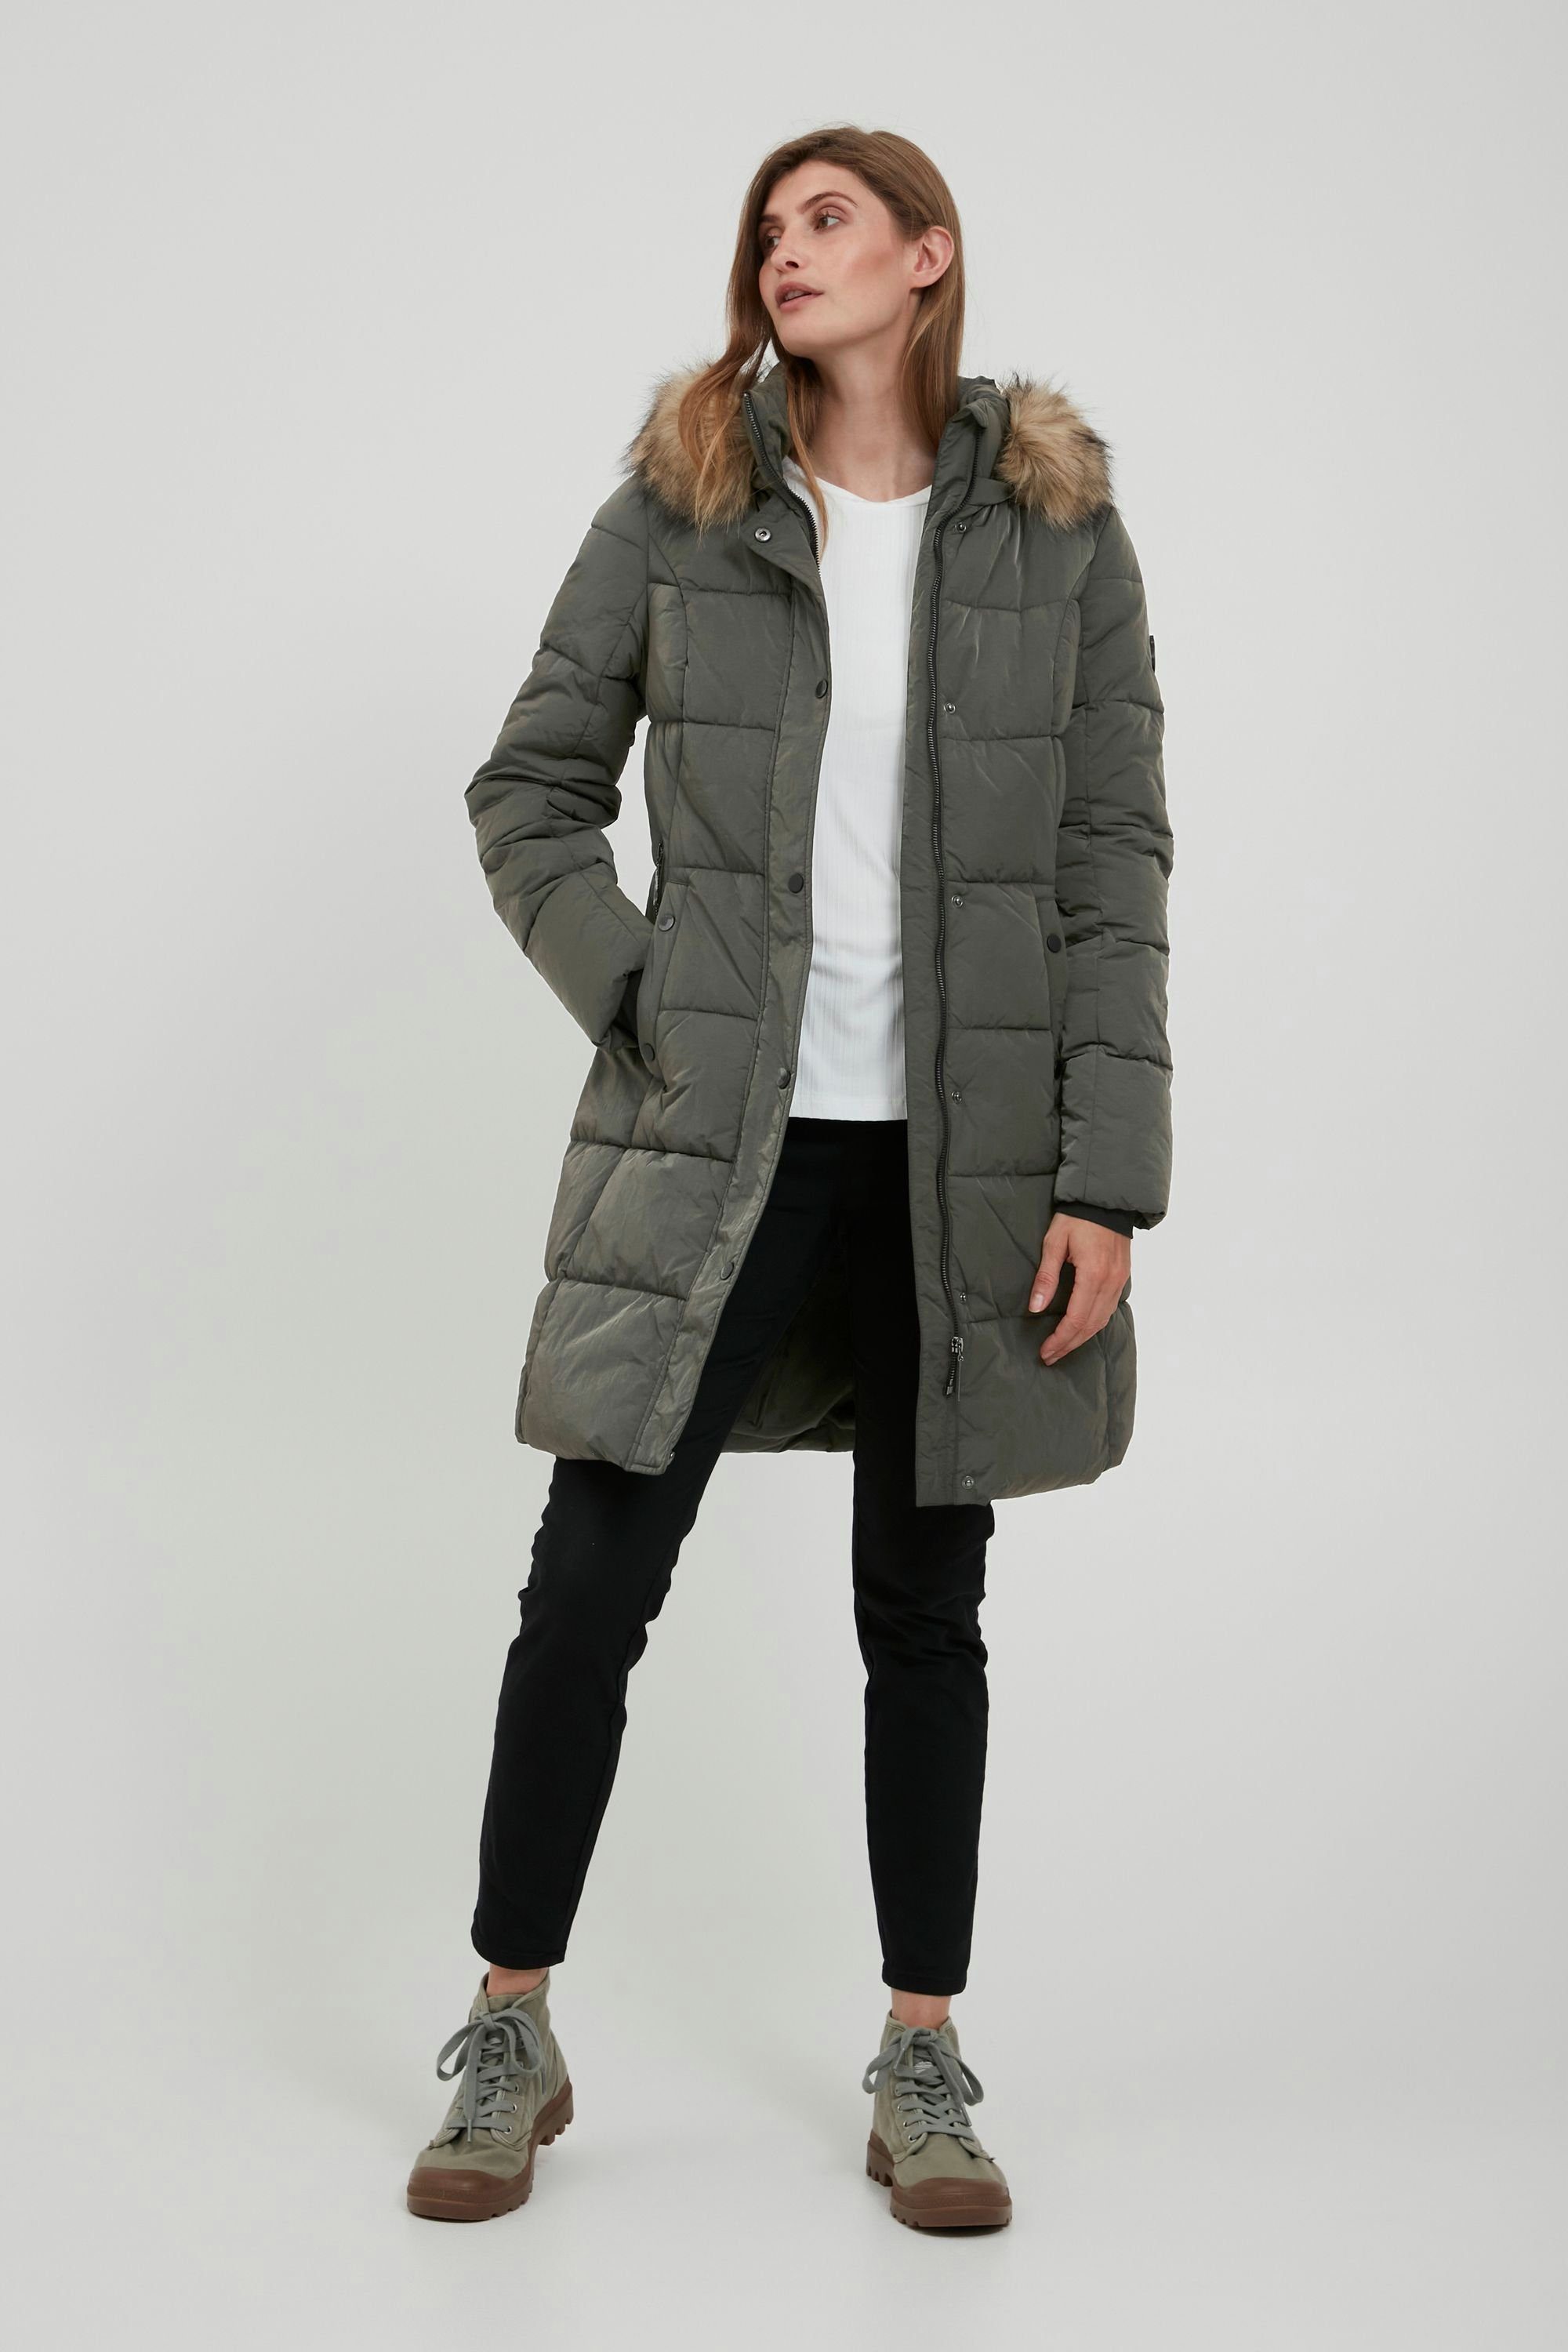 Damen Jacken fransa Winterjacke FRBABAC 1 Outerwear - 20609590